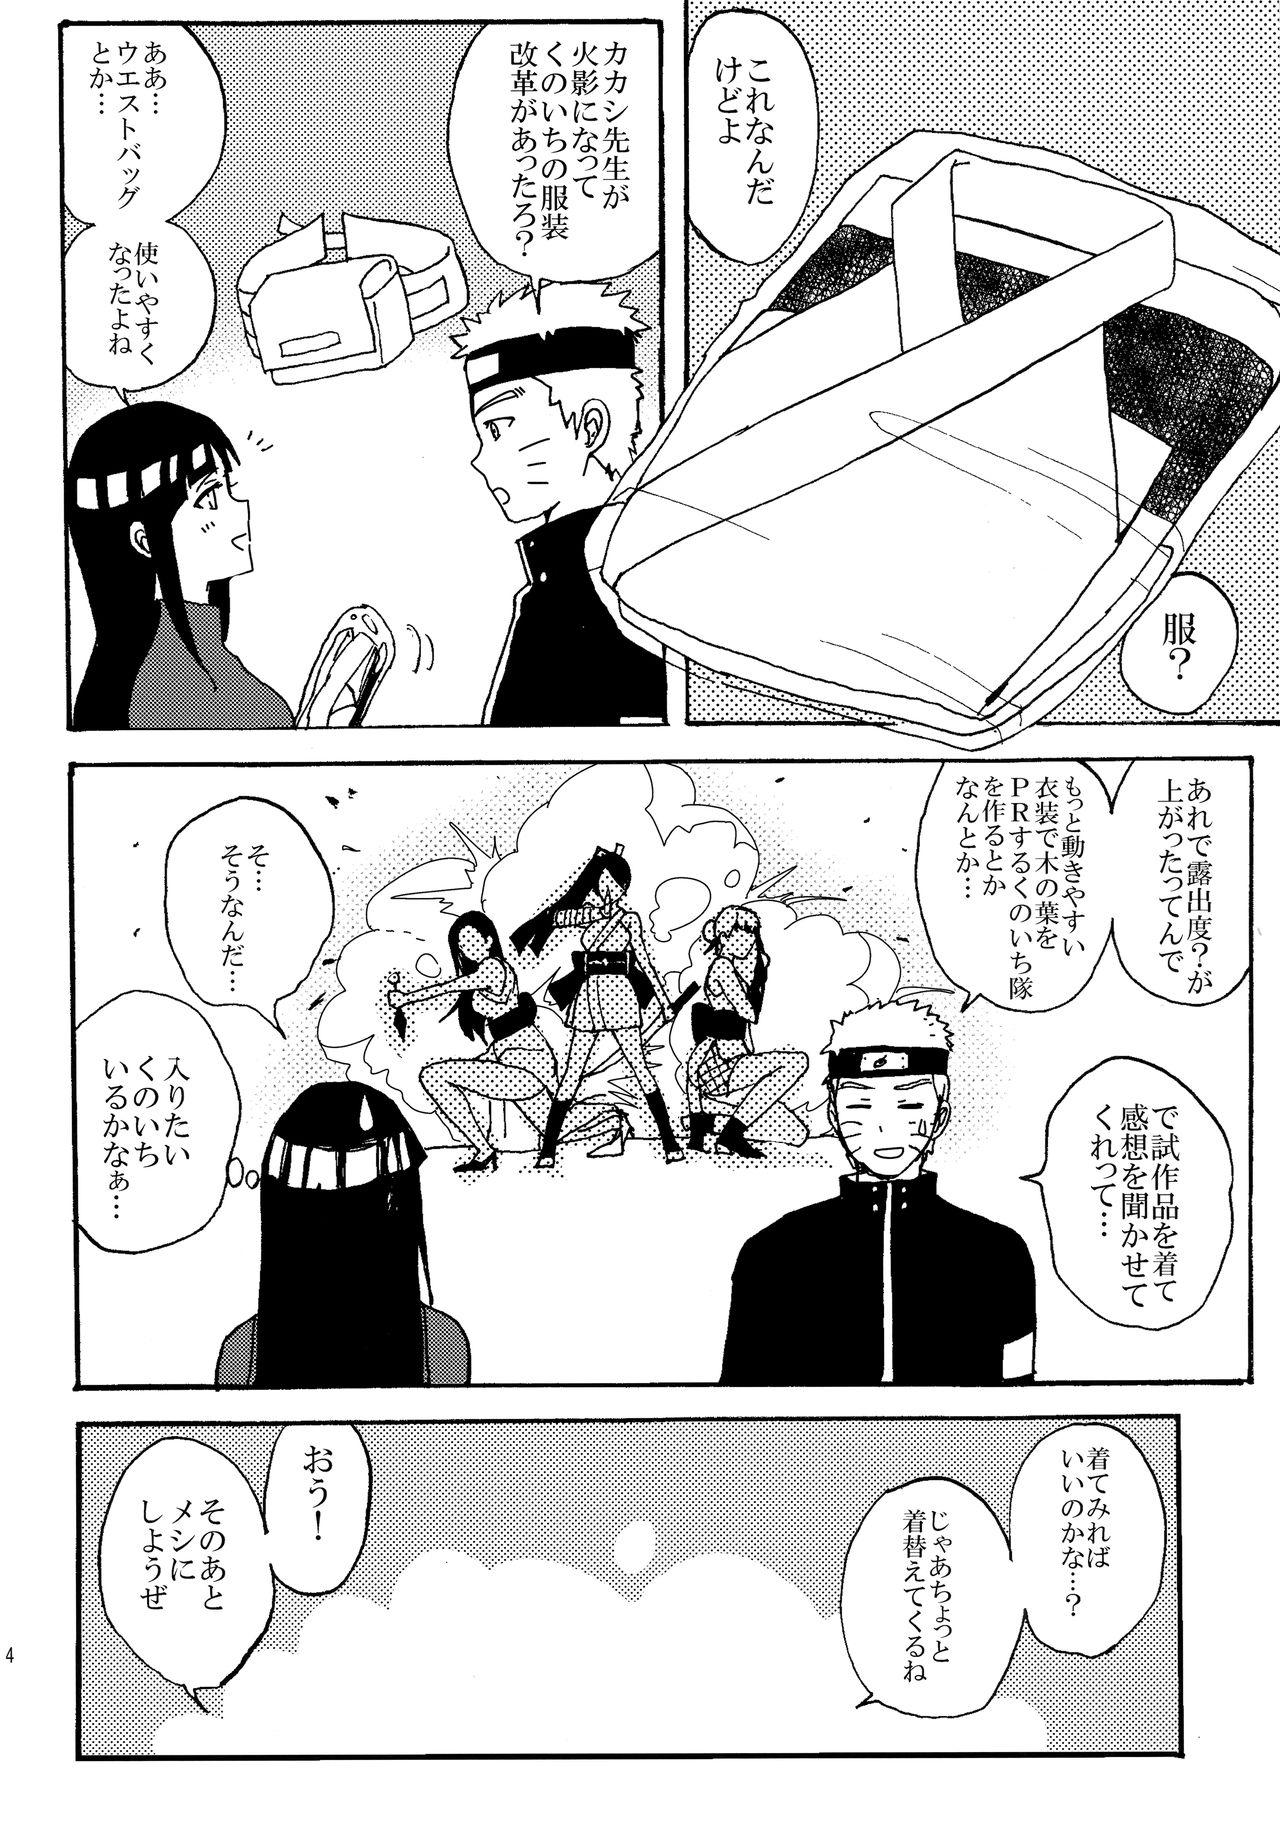 Big Boobs Shinkon Hinata no Kunoichi Cosplay datteba yo! - Naruto Teen - Page 3